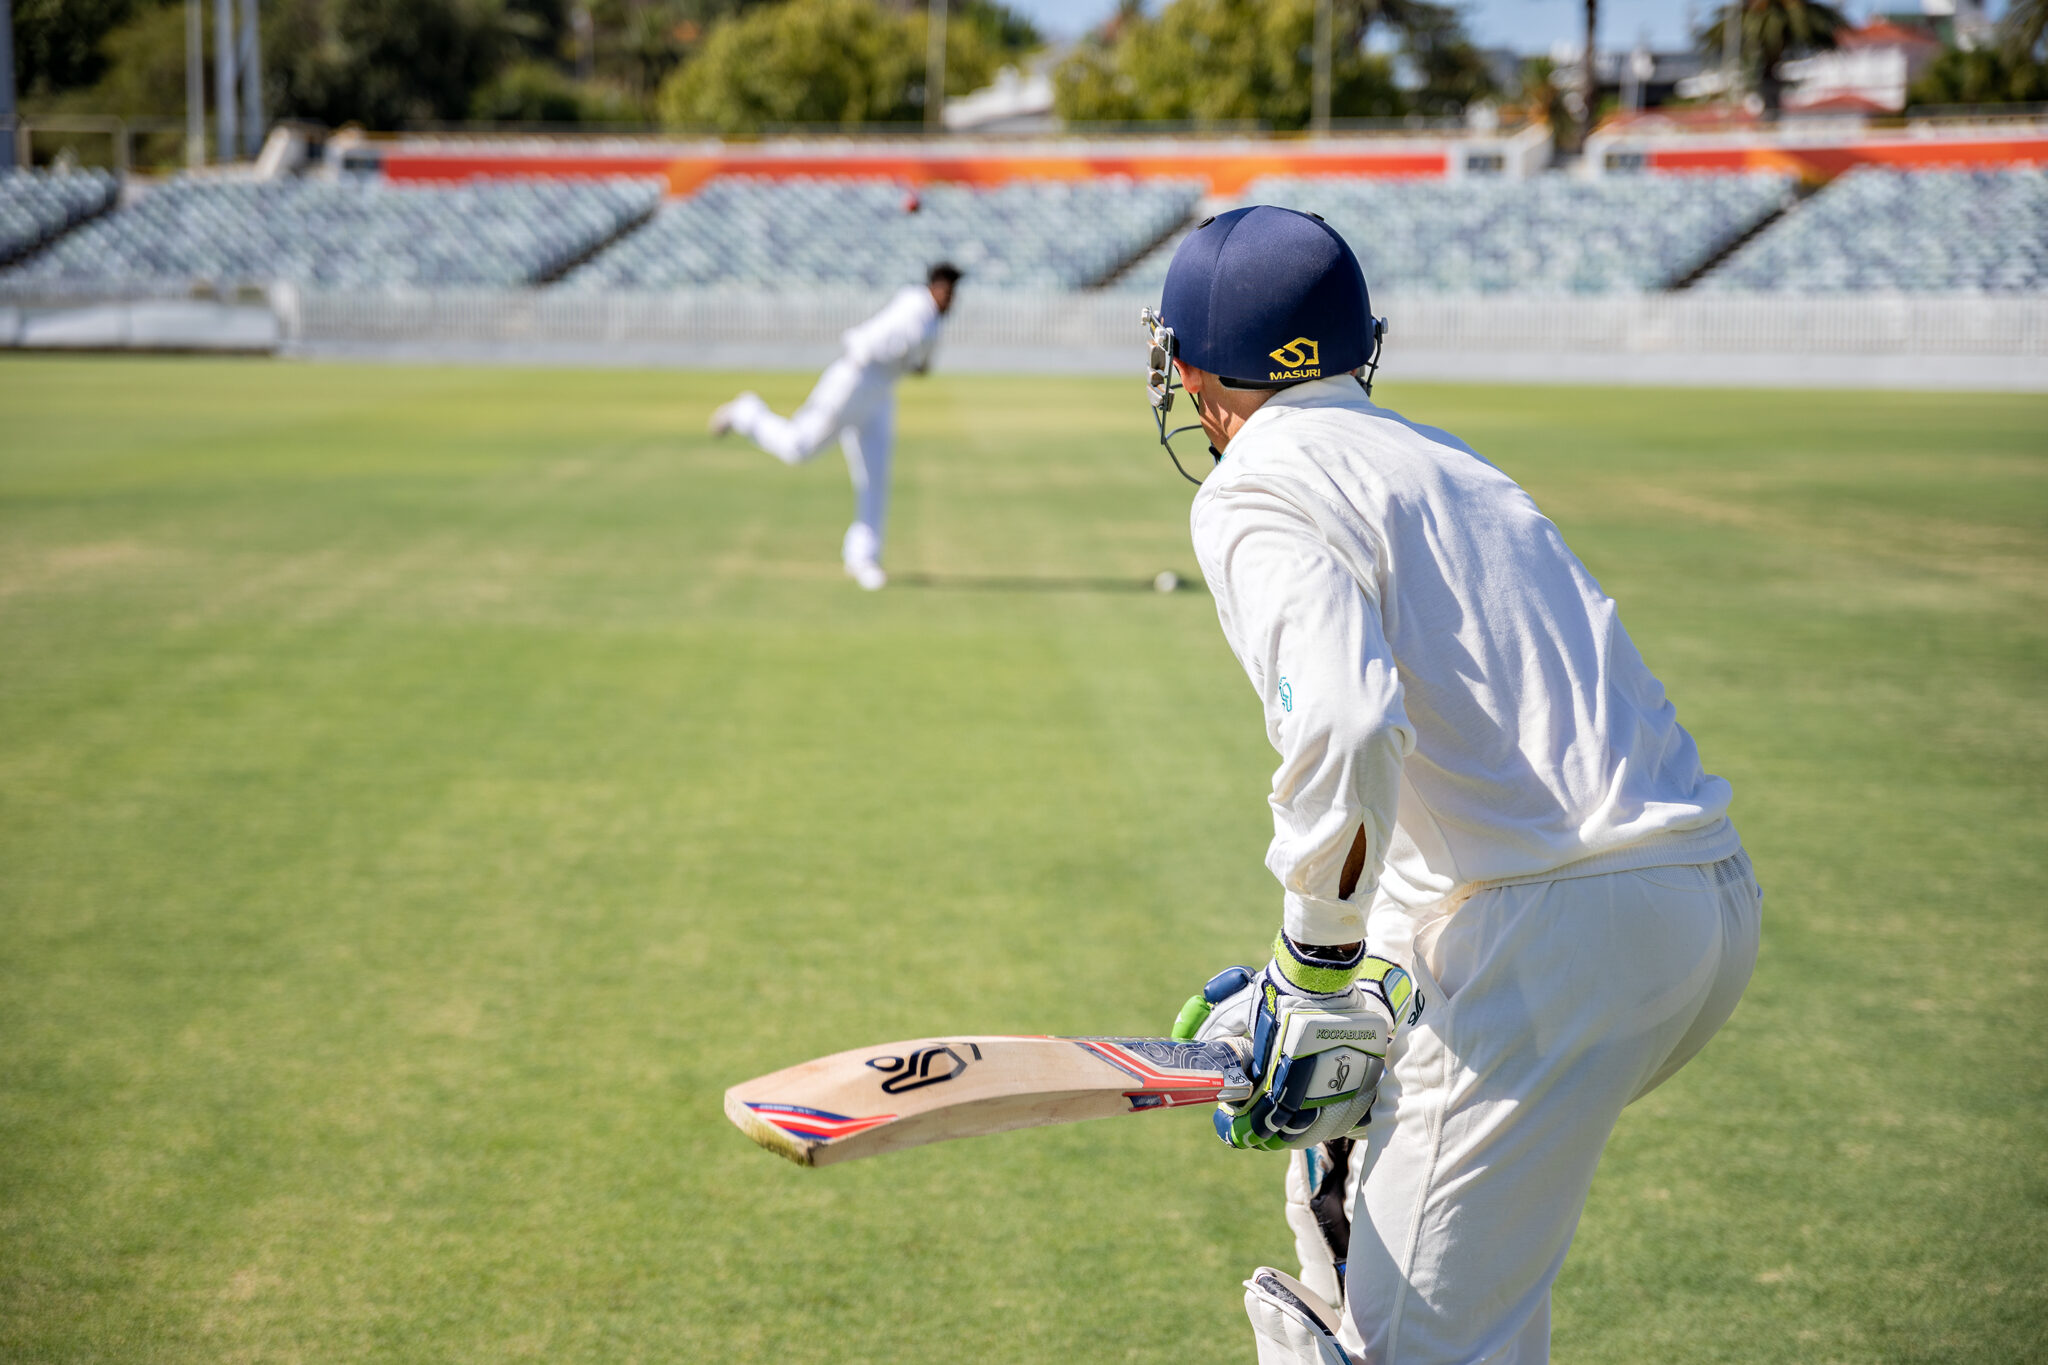 Murdoch University – Cricket Program